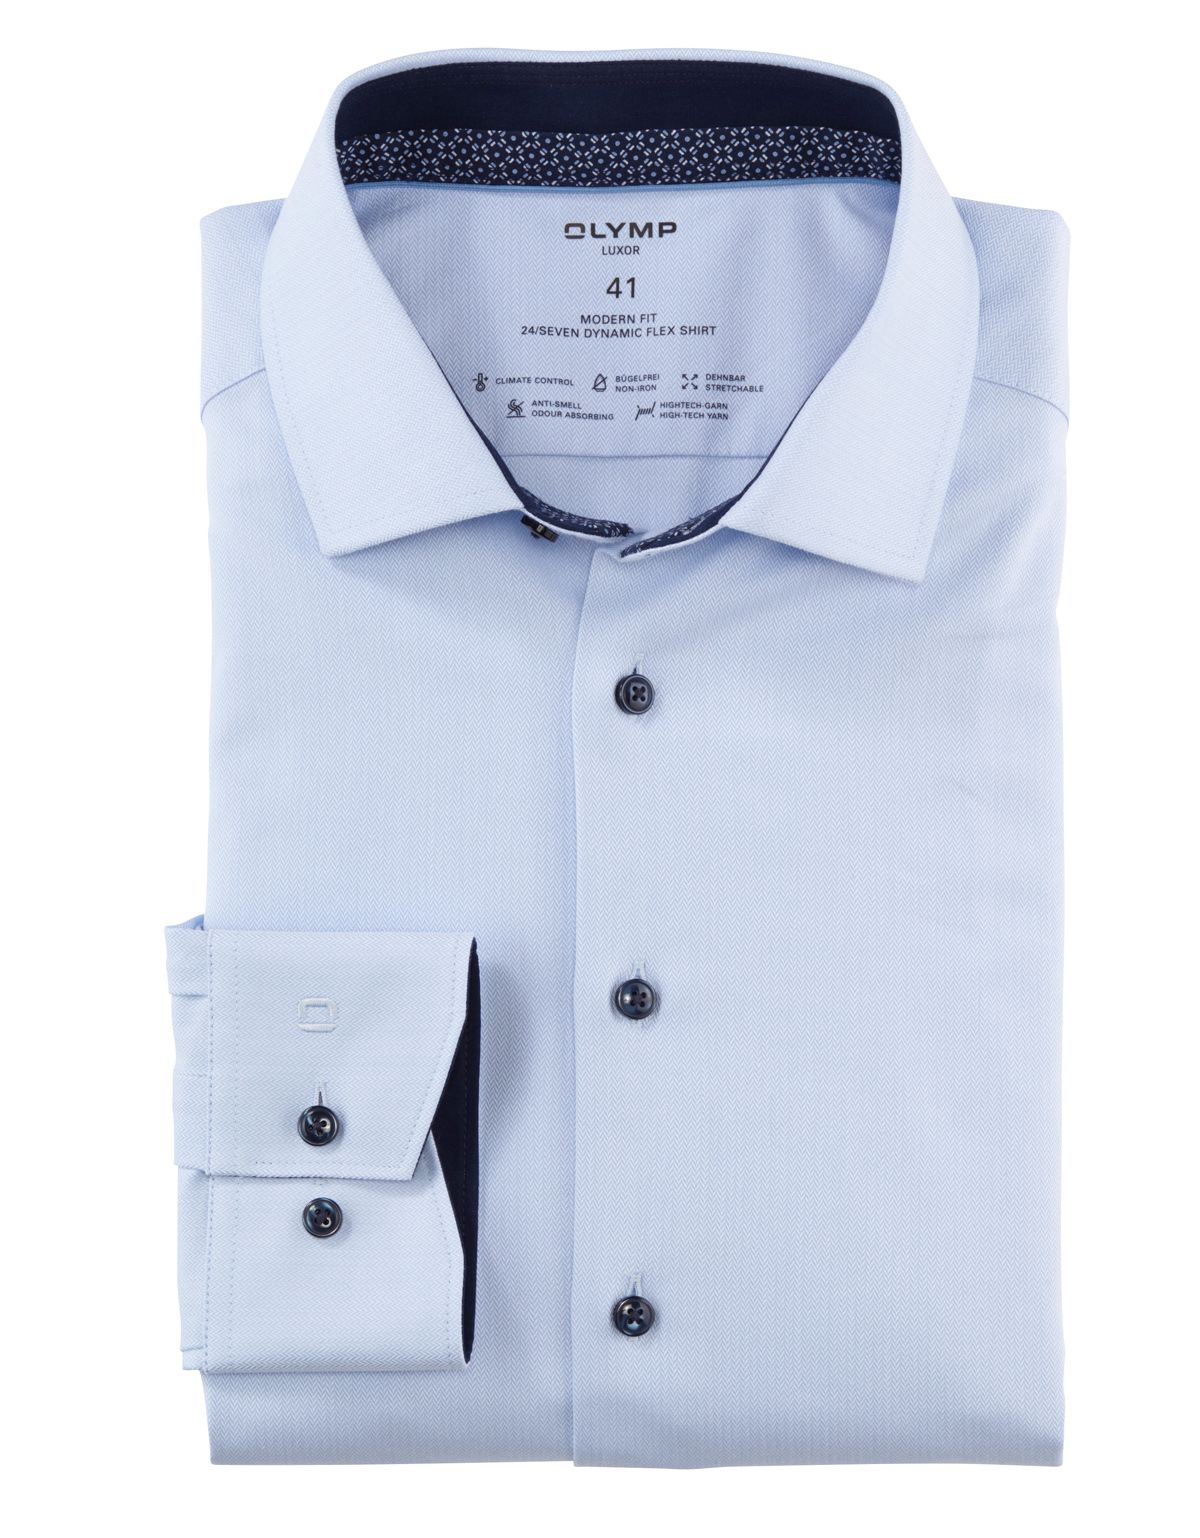 Рубашка мужская климат-контроль OLYMP Luxor 24/7, modern fit[ГОЛУБОЙ]